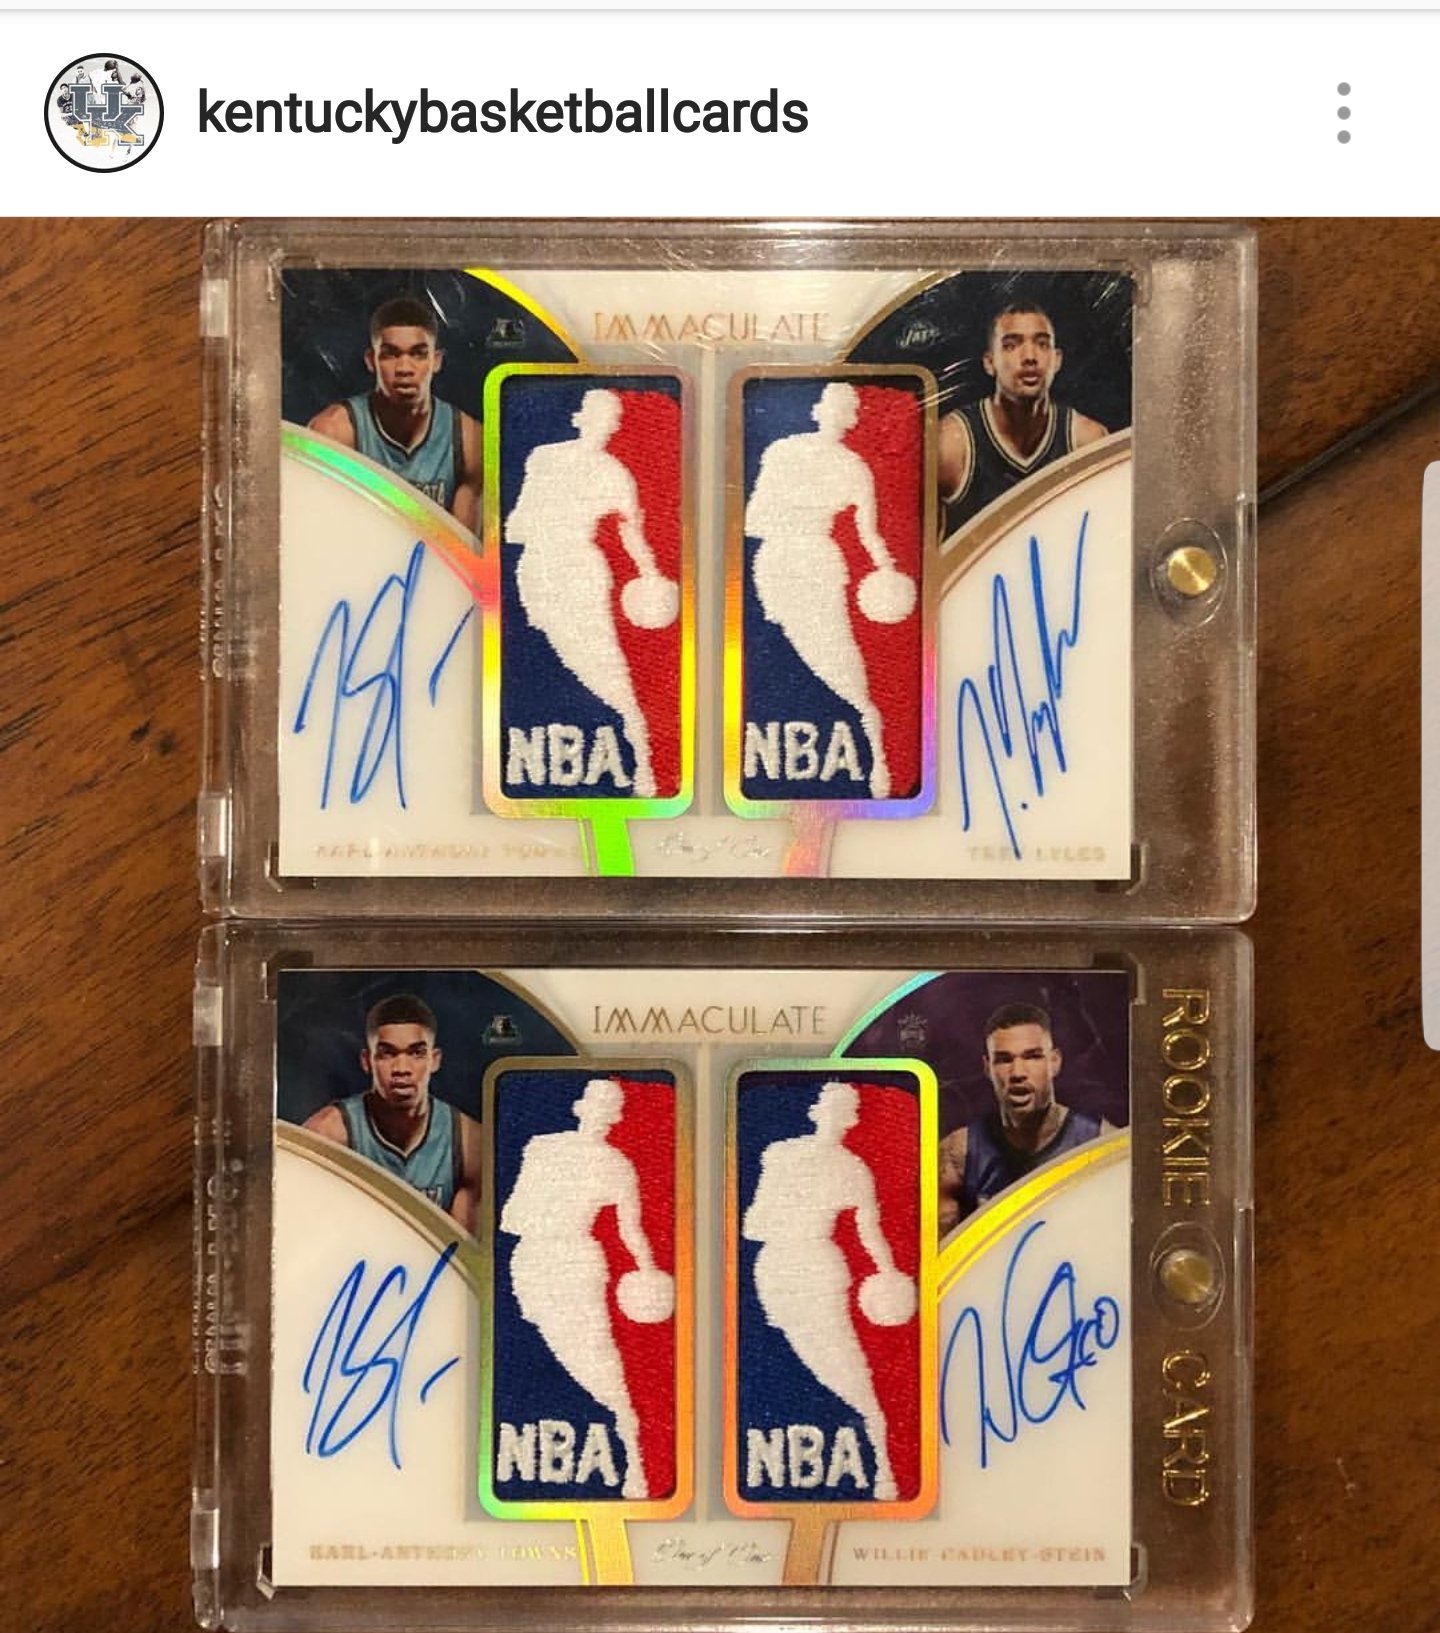 Kentucky Basketball Cards Instagram